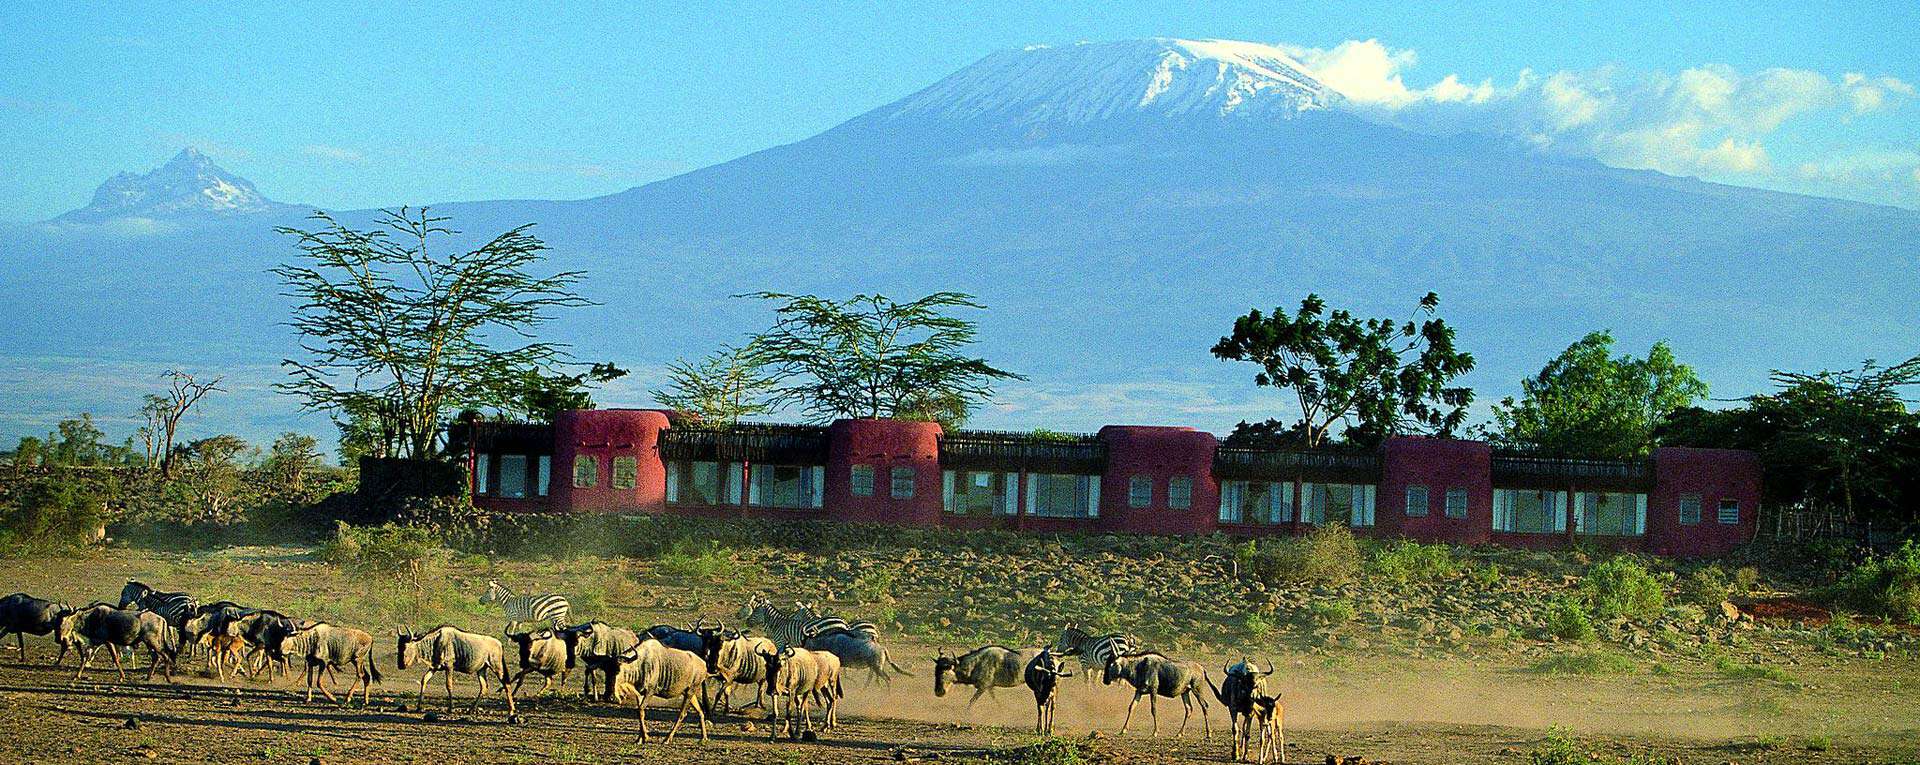 Amboseli Serena Safari Lodge - Kenya - AfricanMecca Safaris & Tours